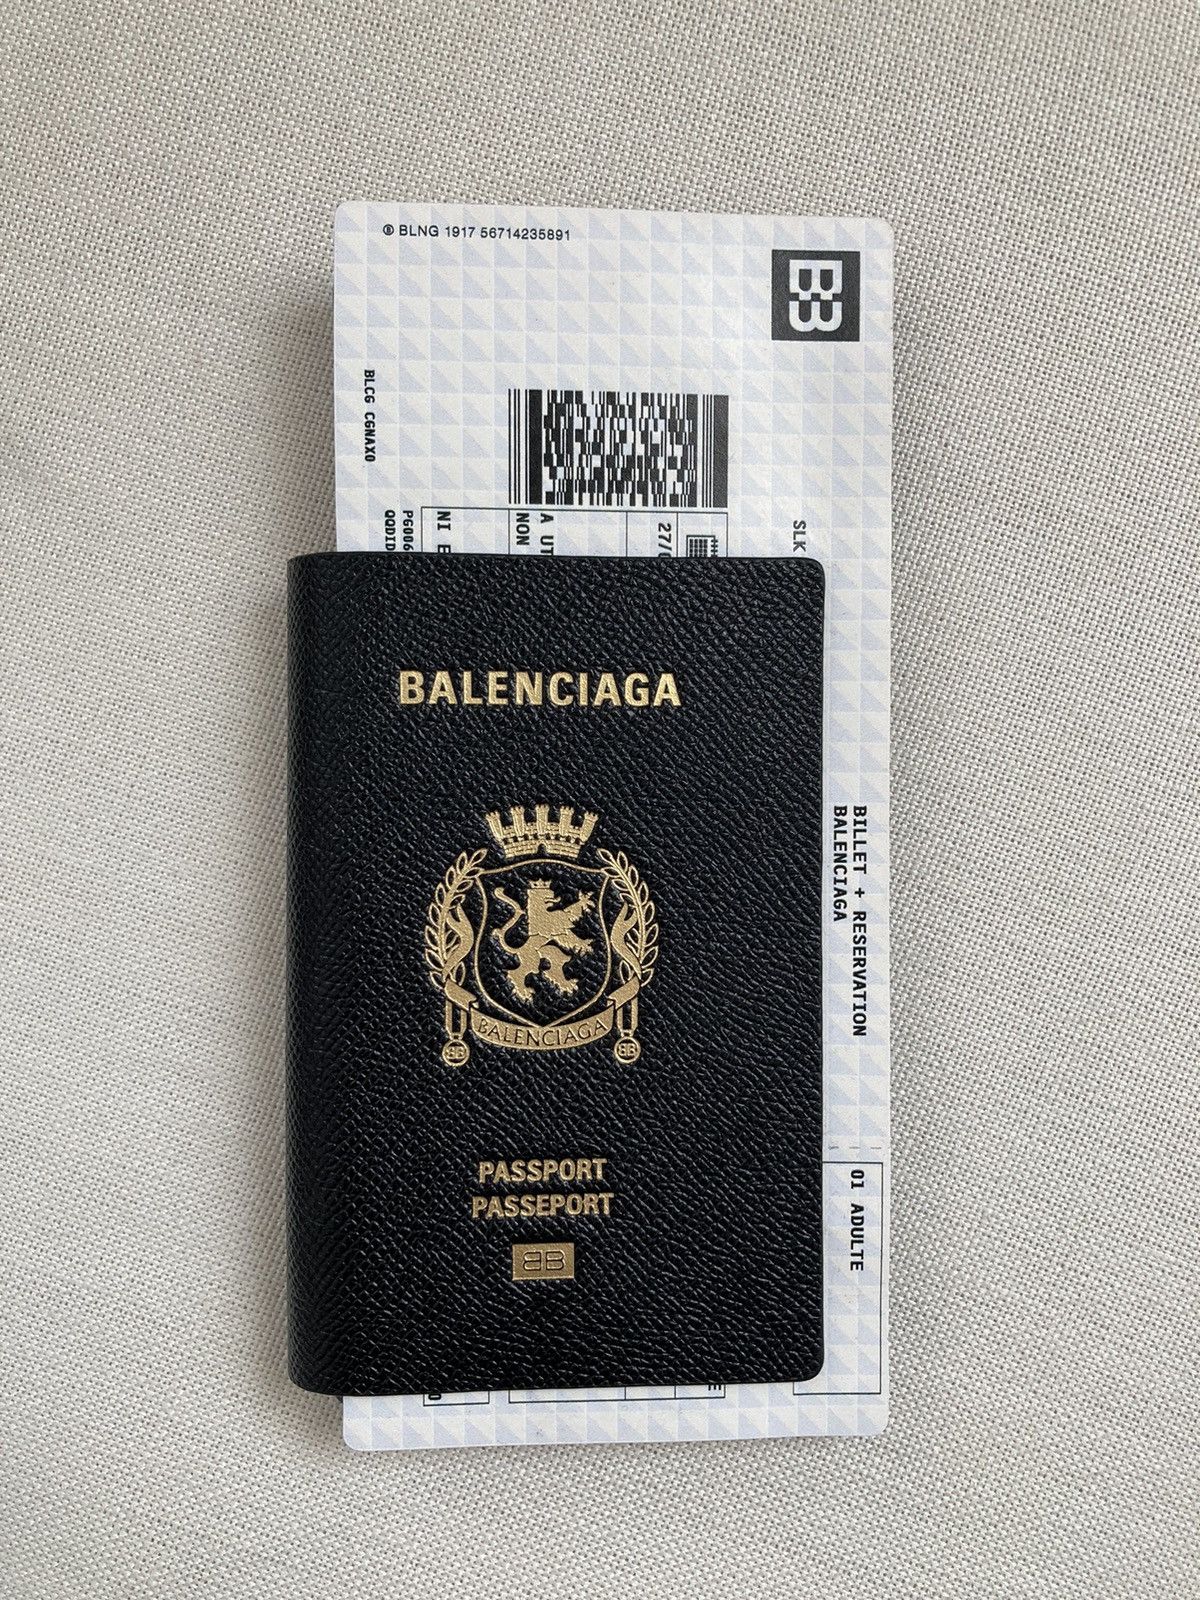 Balenciaga Balenciaga Passport Long Wallet | Grailed